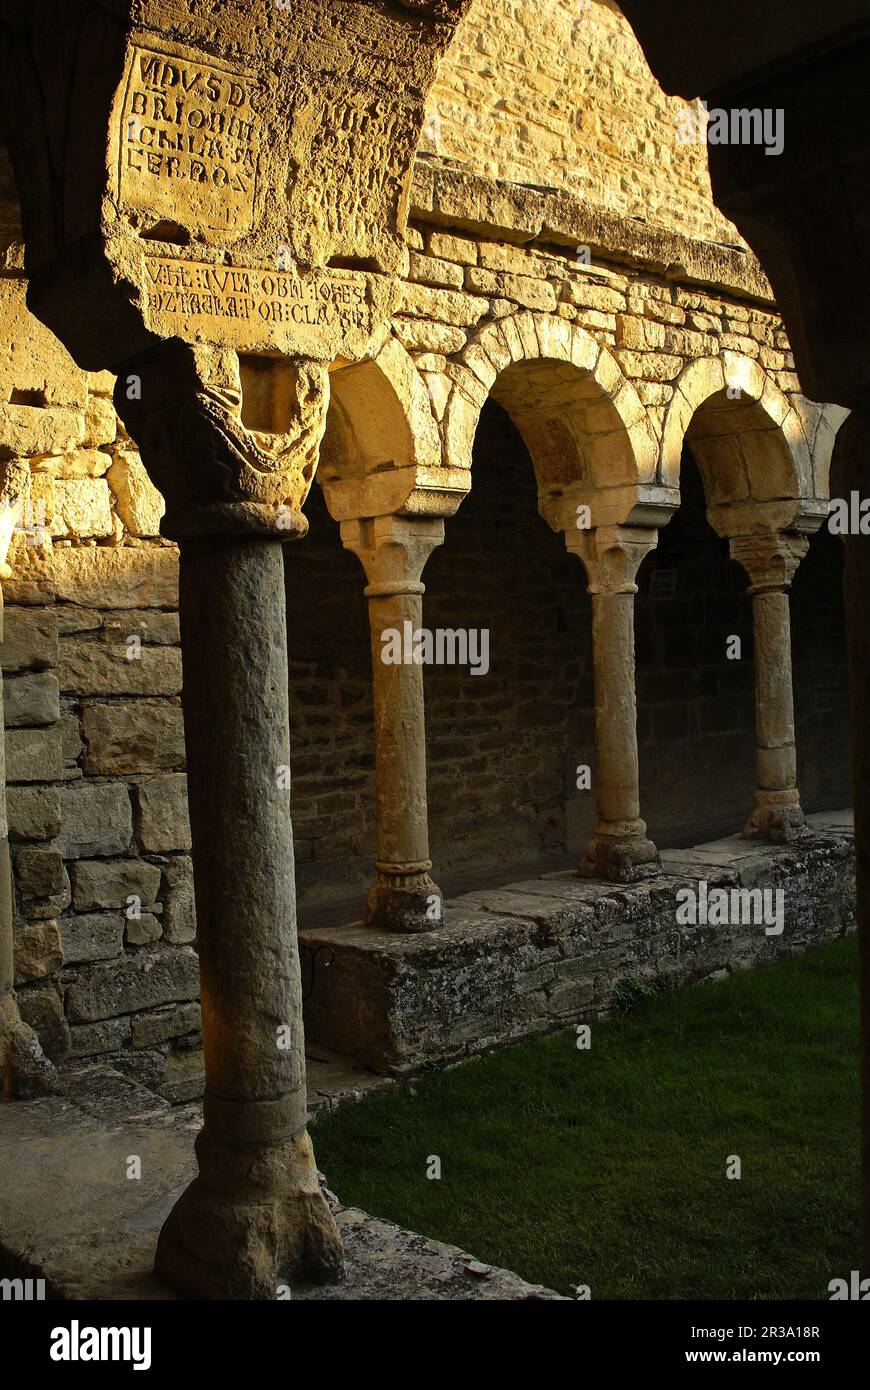 Claustro de la catedral romanica de San Vicente(s.XI). Roda de Isábena.Aragón. España. Stock Photo